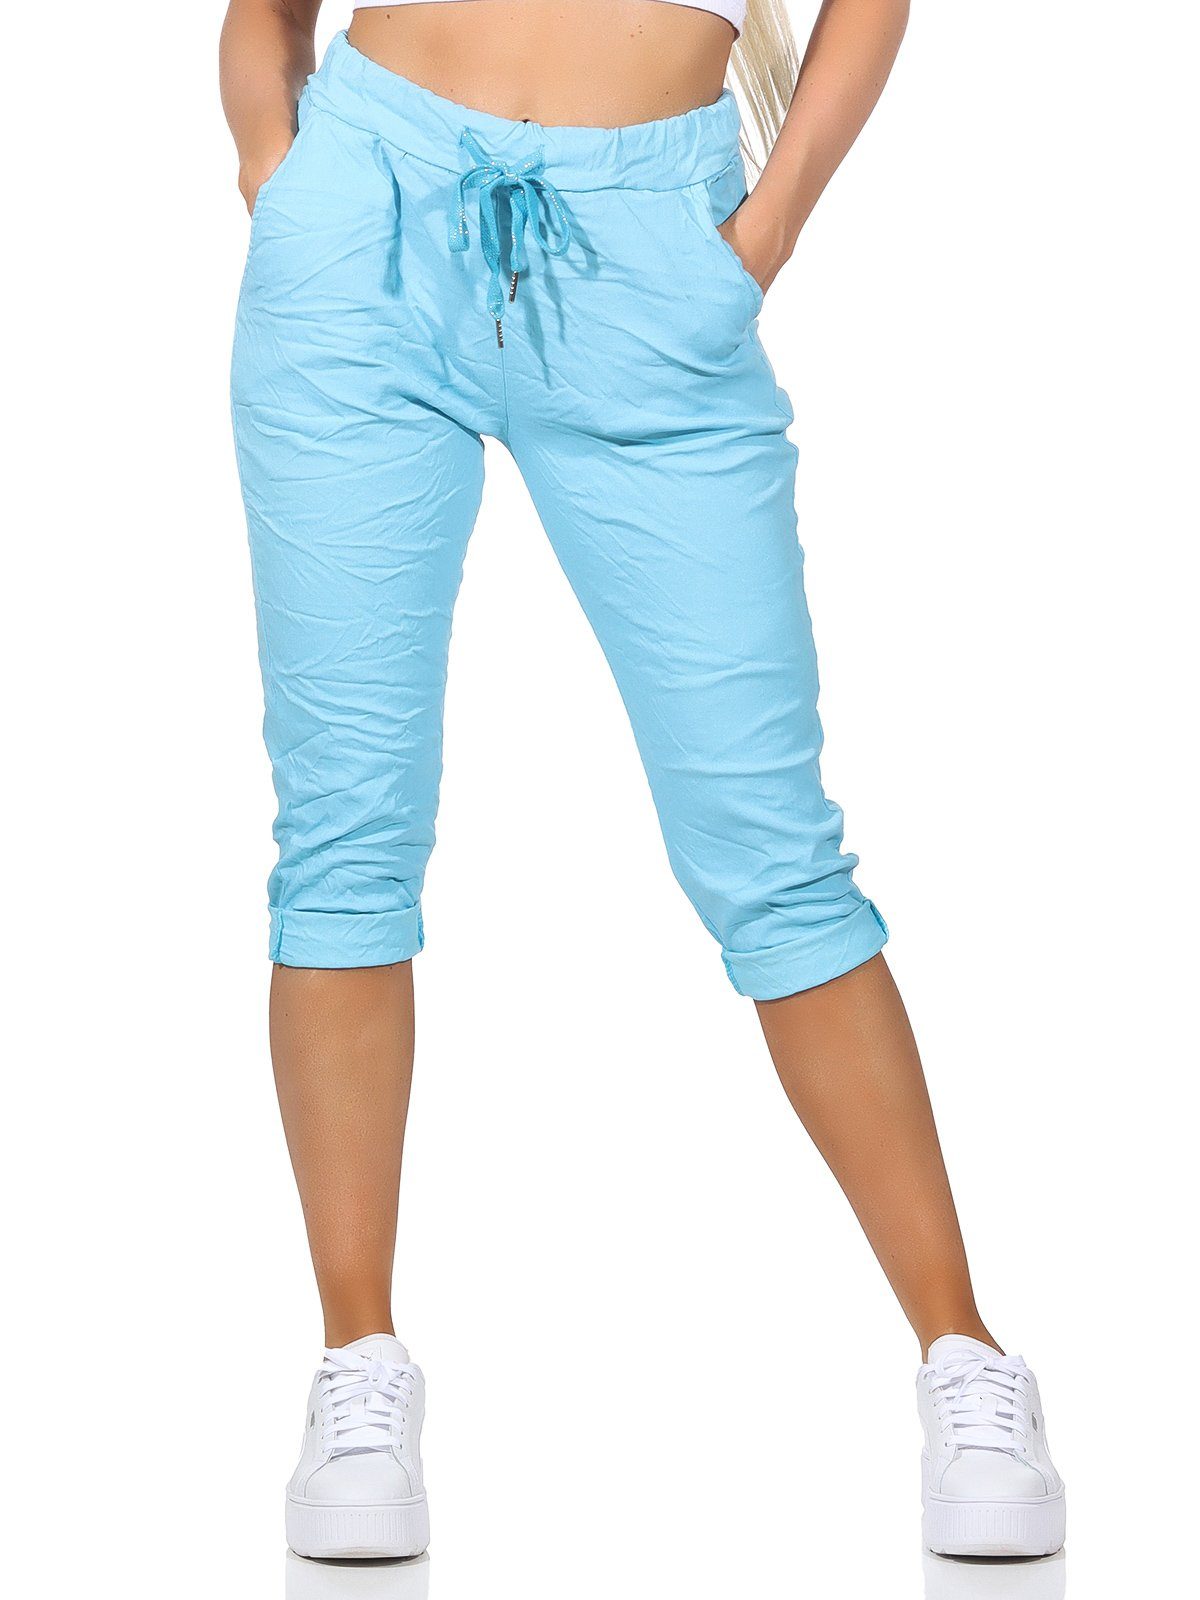 und Bermuda 7/8-Hose Damen Capri Türkis in Sommerhose Taschen Kurze Damenmode sommerlichen 36-44 Jeans Hose Farben, Aurela Kordelzug,